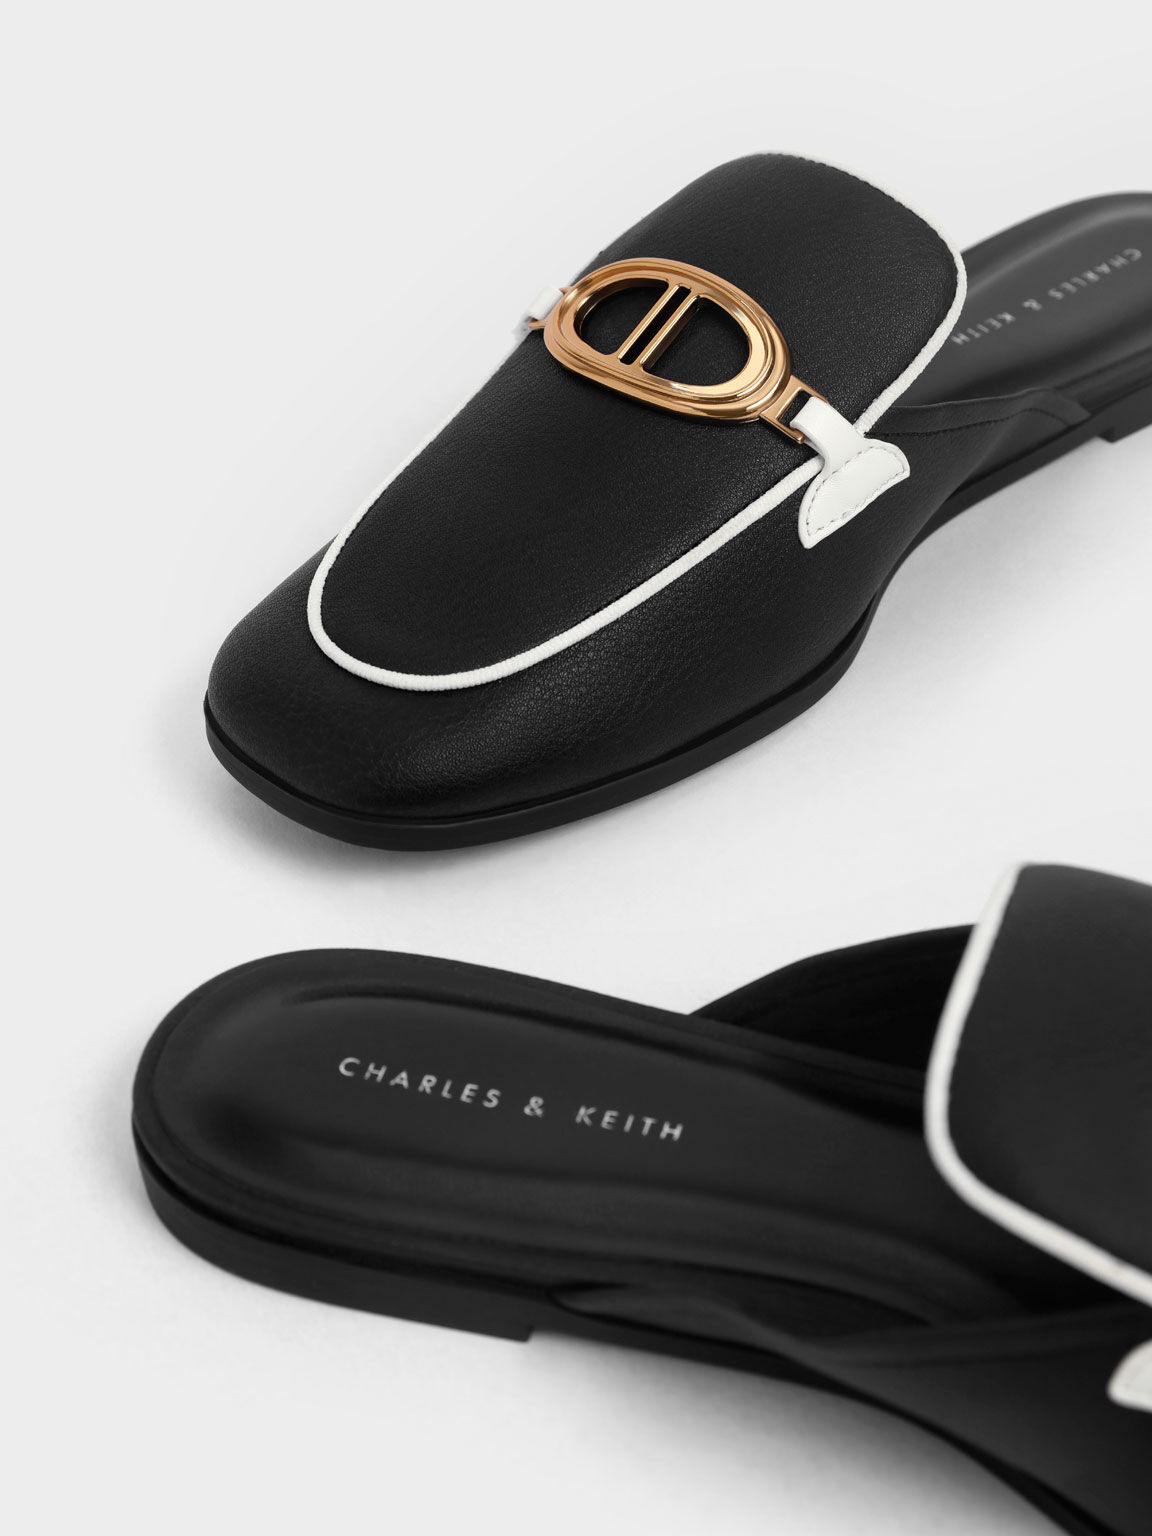 Sepatu Loafer Mules Metallic Accent, Black, hi-res